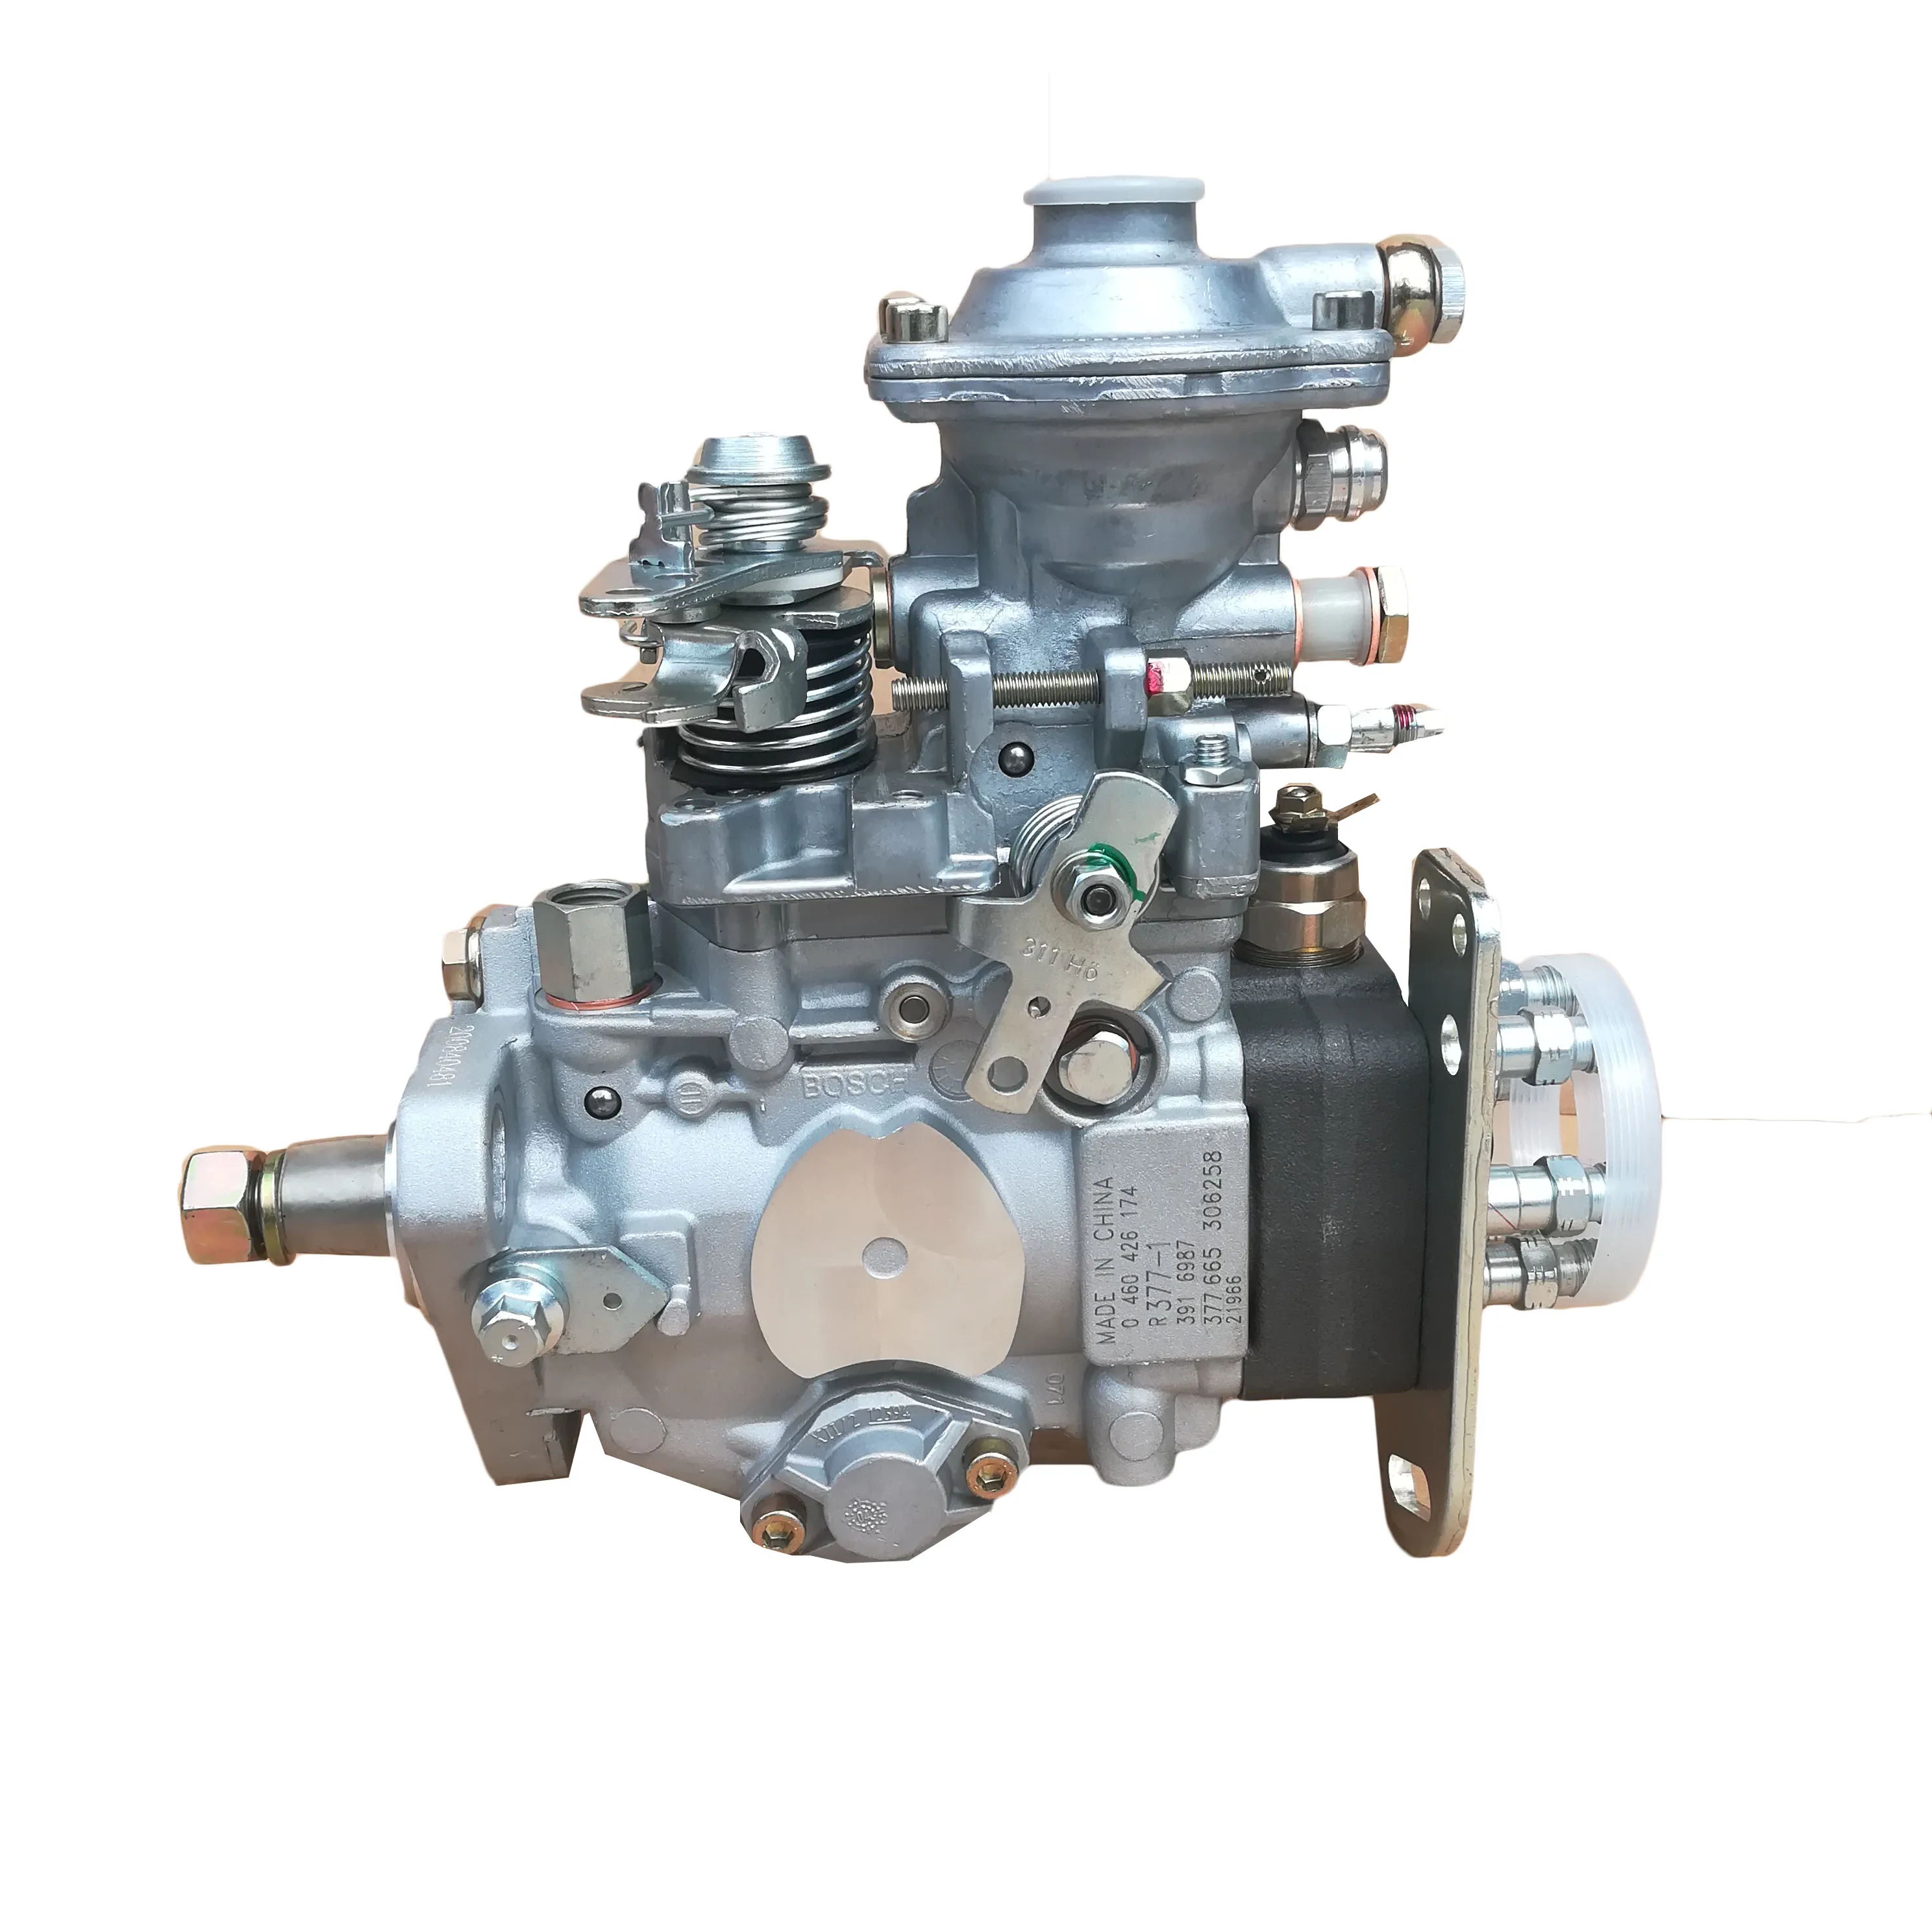 

0 460 426 174 For Cummins 6BT118-01 Diesel Engine Fuel Injection Pump 3916987 0460426174 R377-1